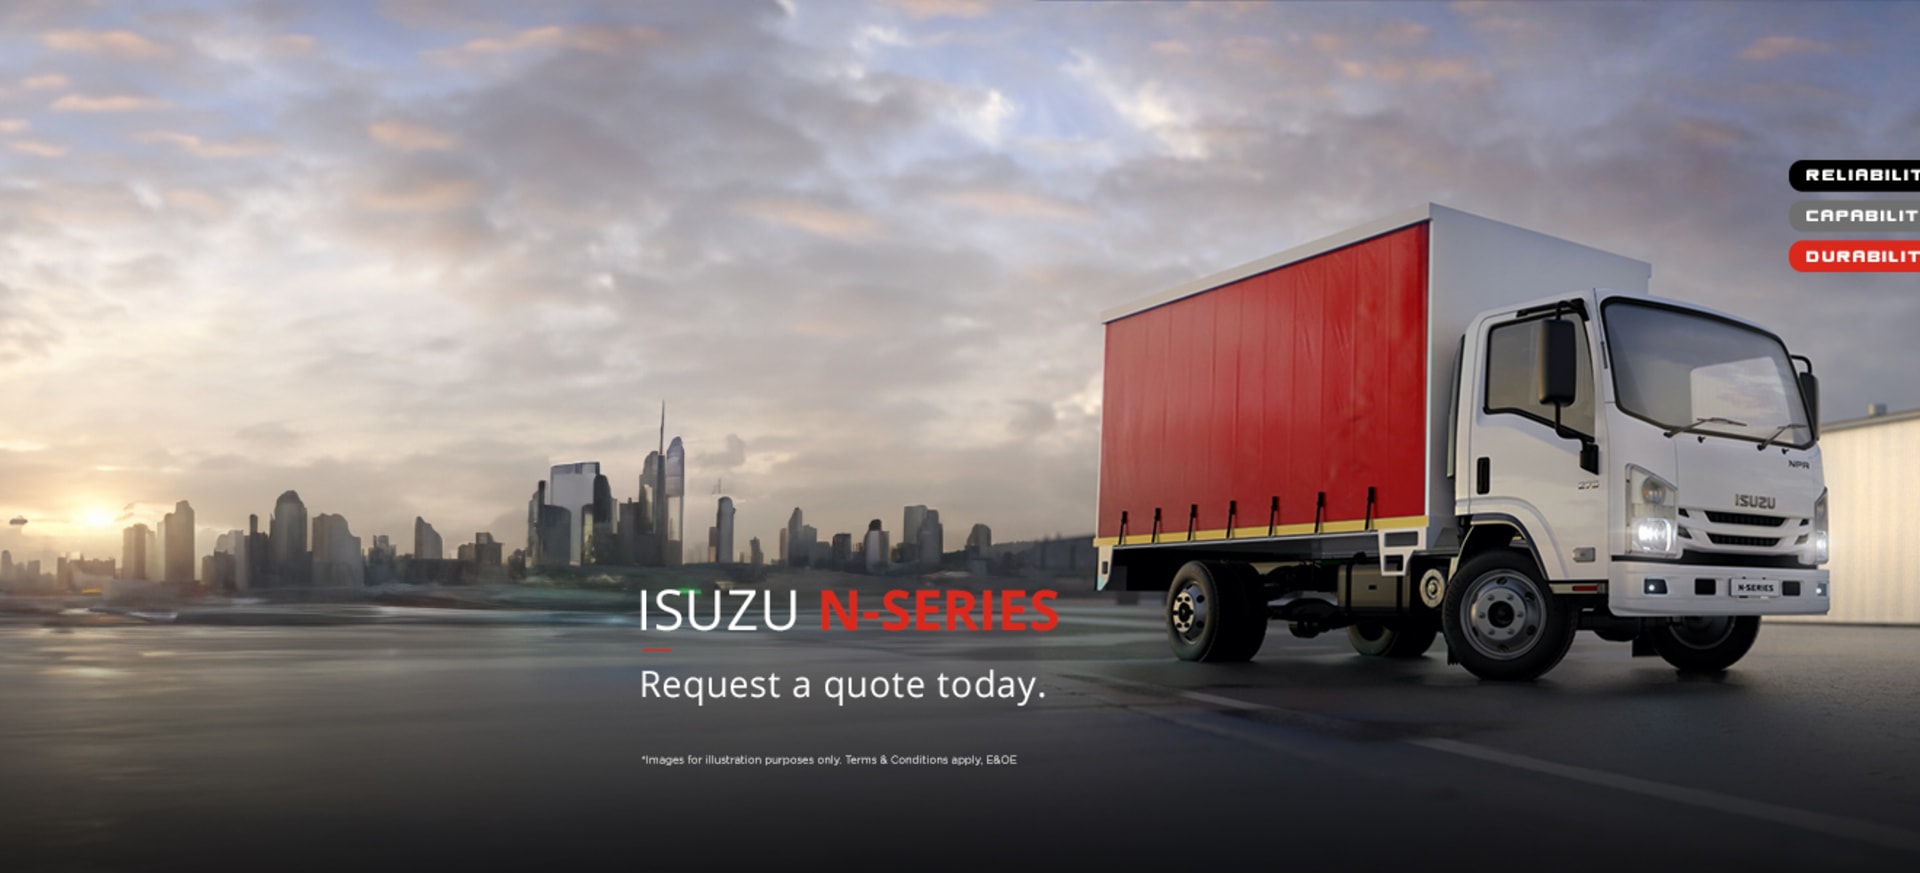 ISUZU N-Series Trucks